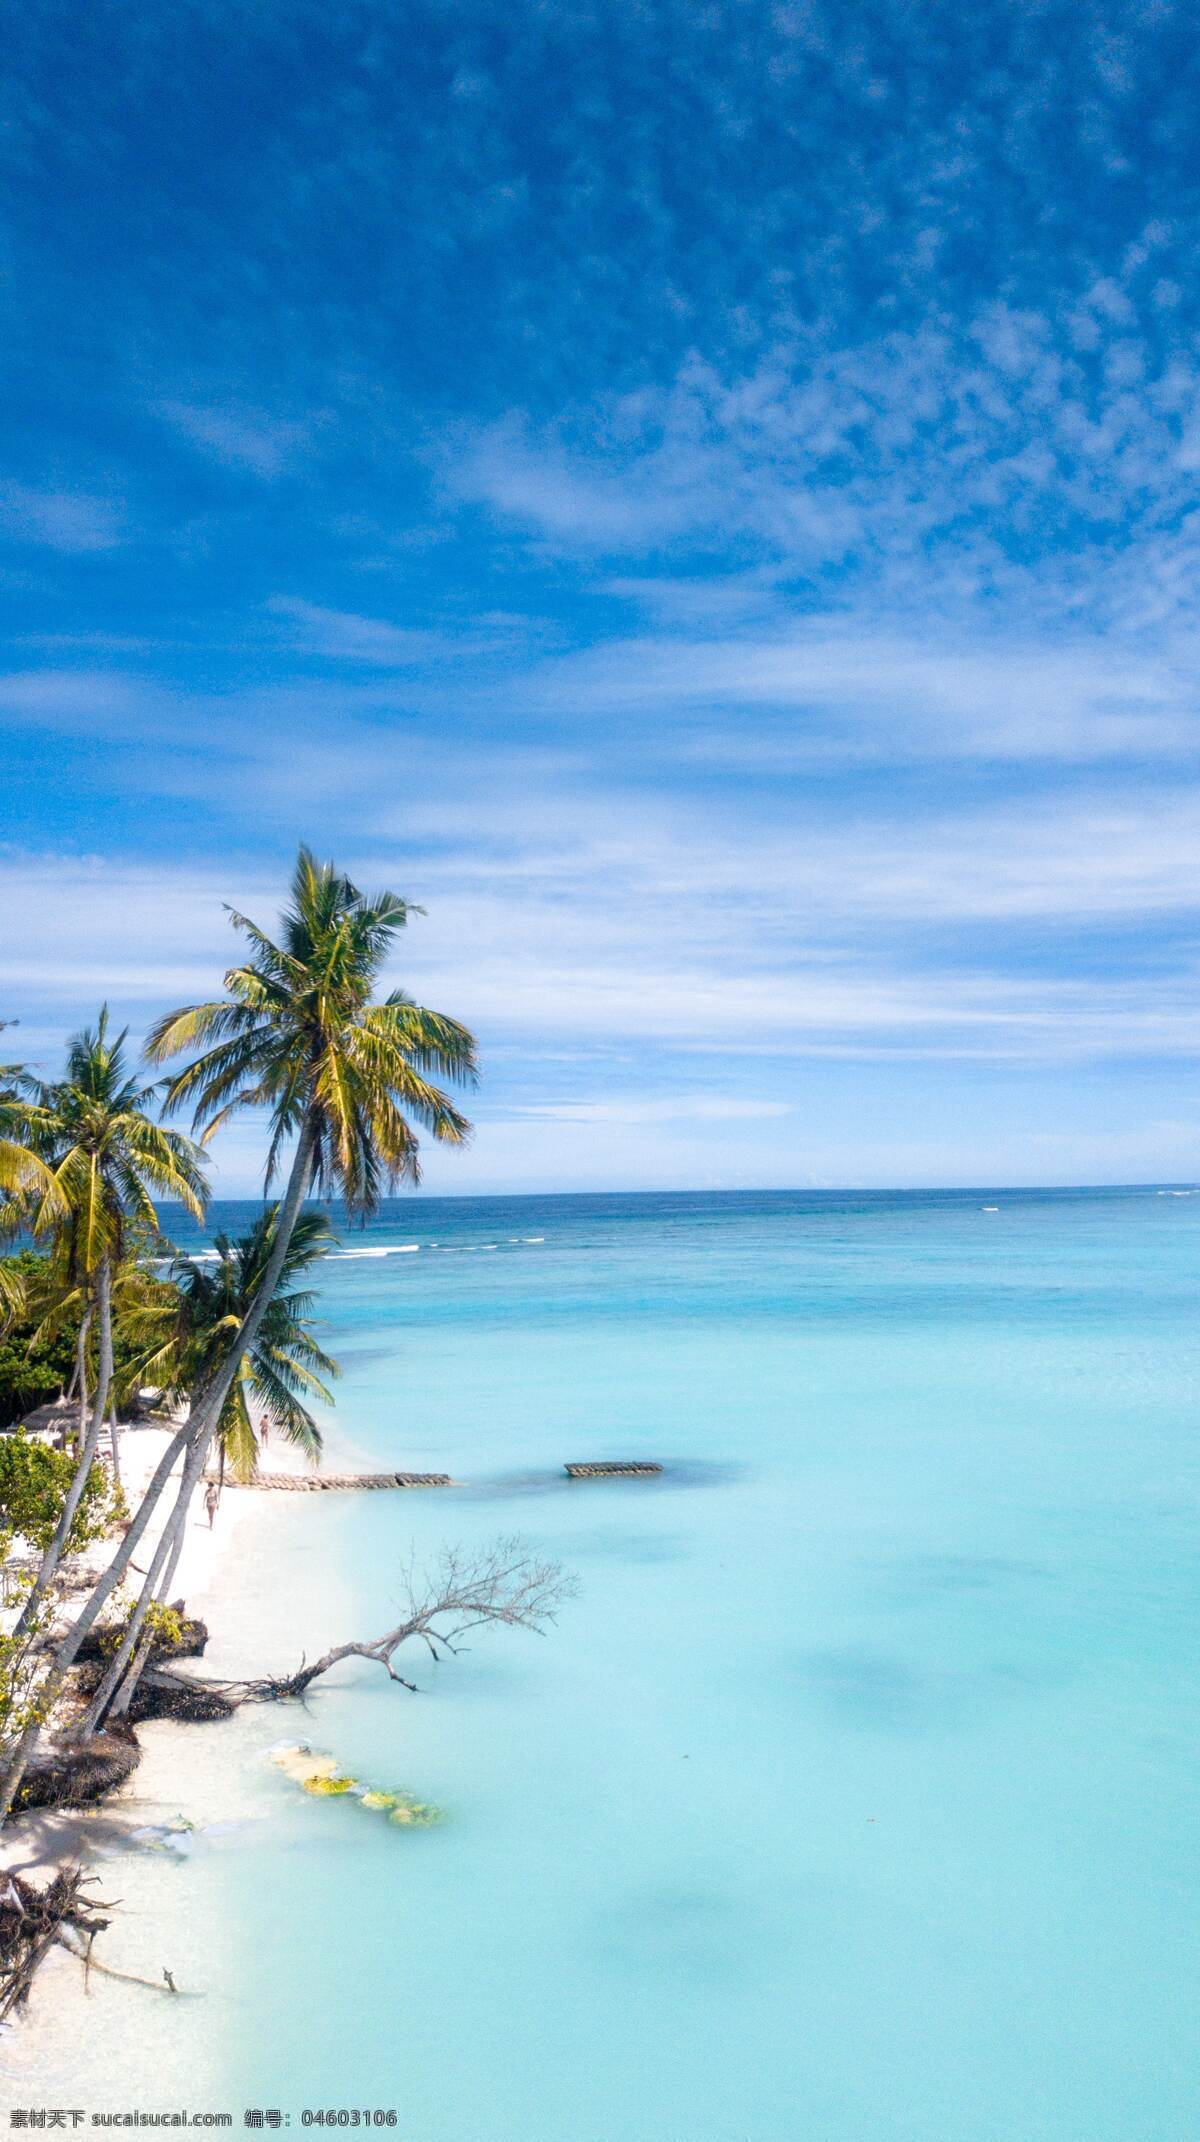 海滩 沙滩 椰子树 蓝色背景 蓝天白云 海边 大海 海景 唯美背景 清凉背景 风景 自然景观 自然风景